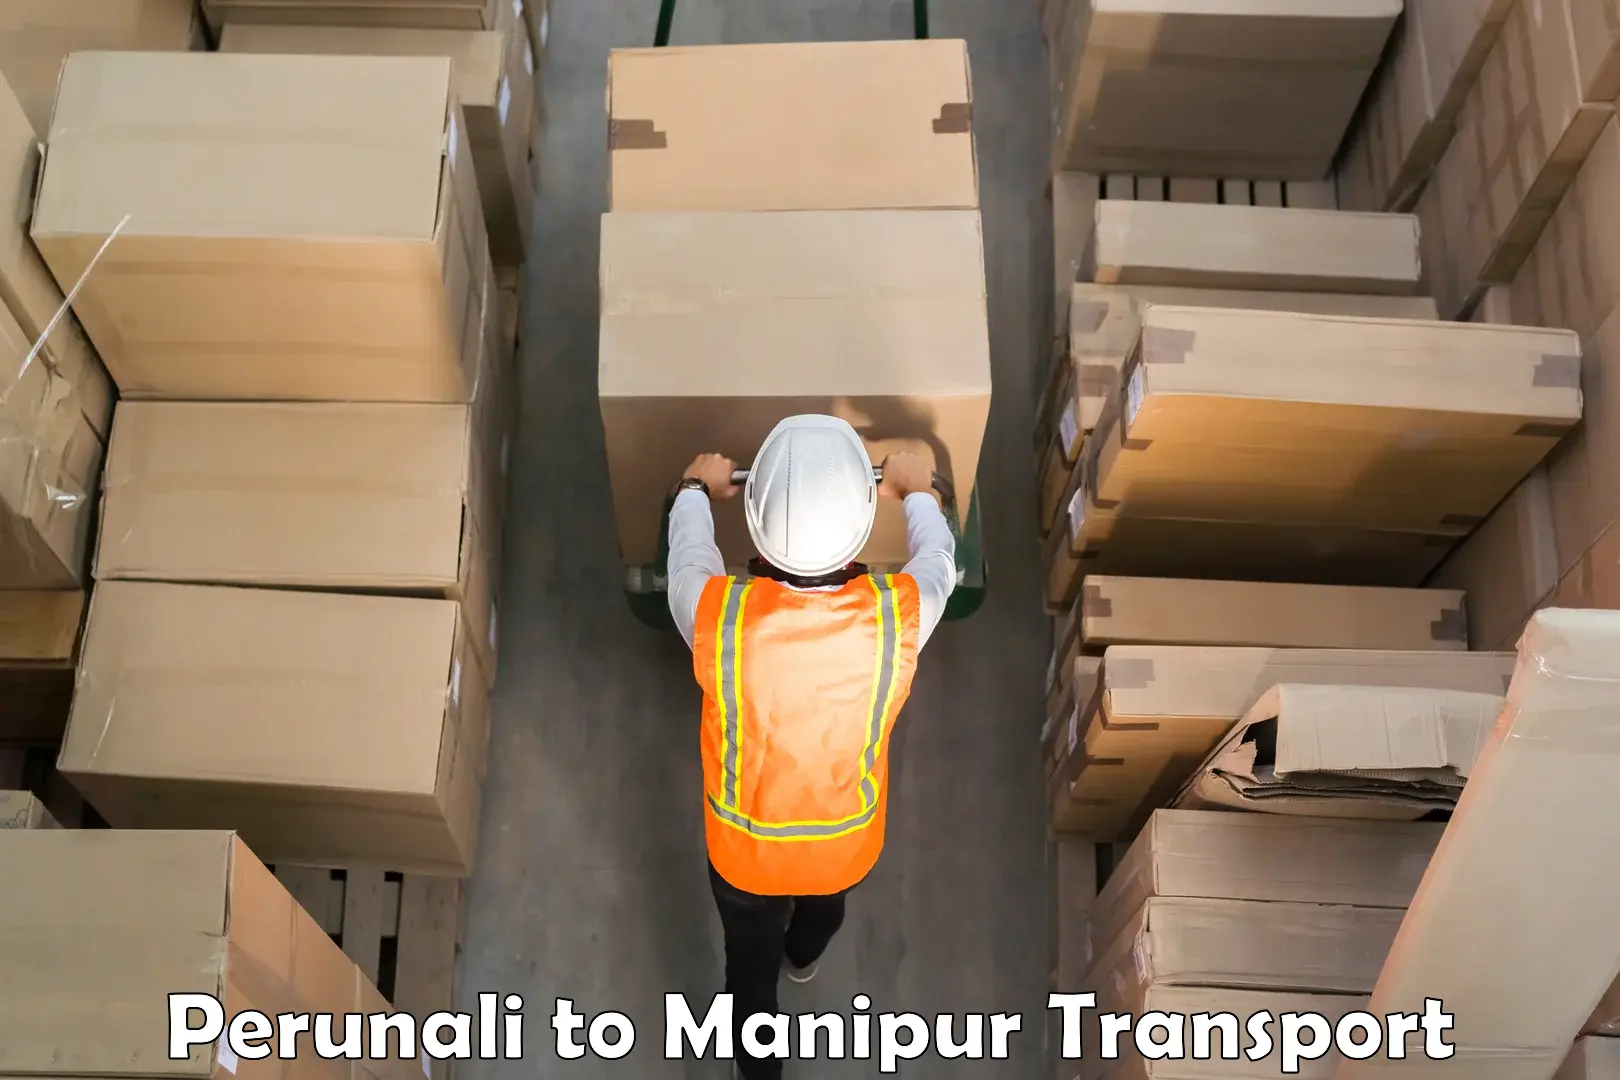 Furniture transport service Perunali to Chandel